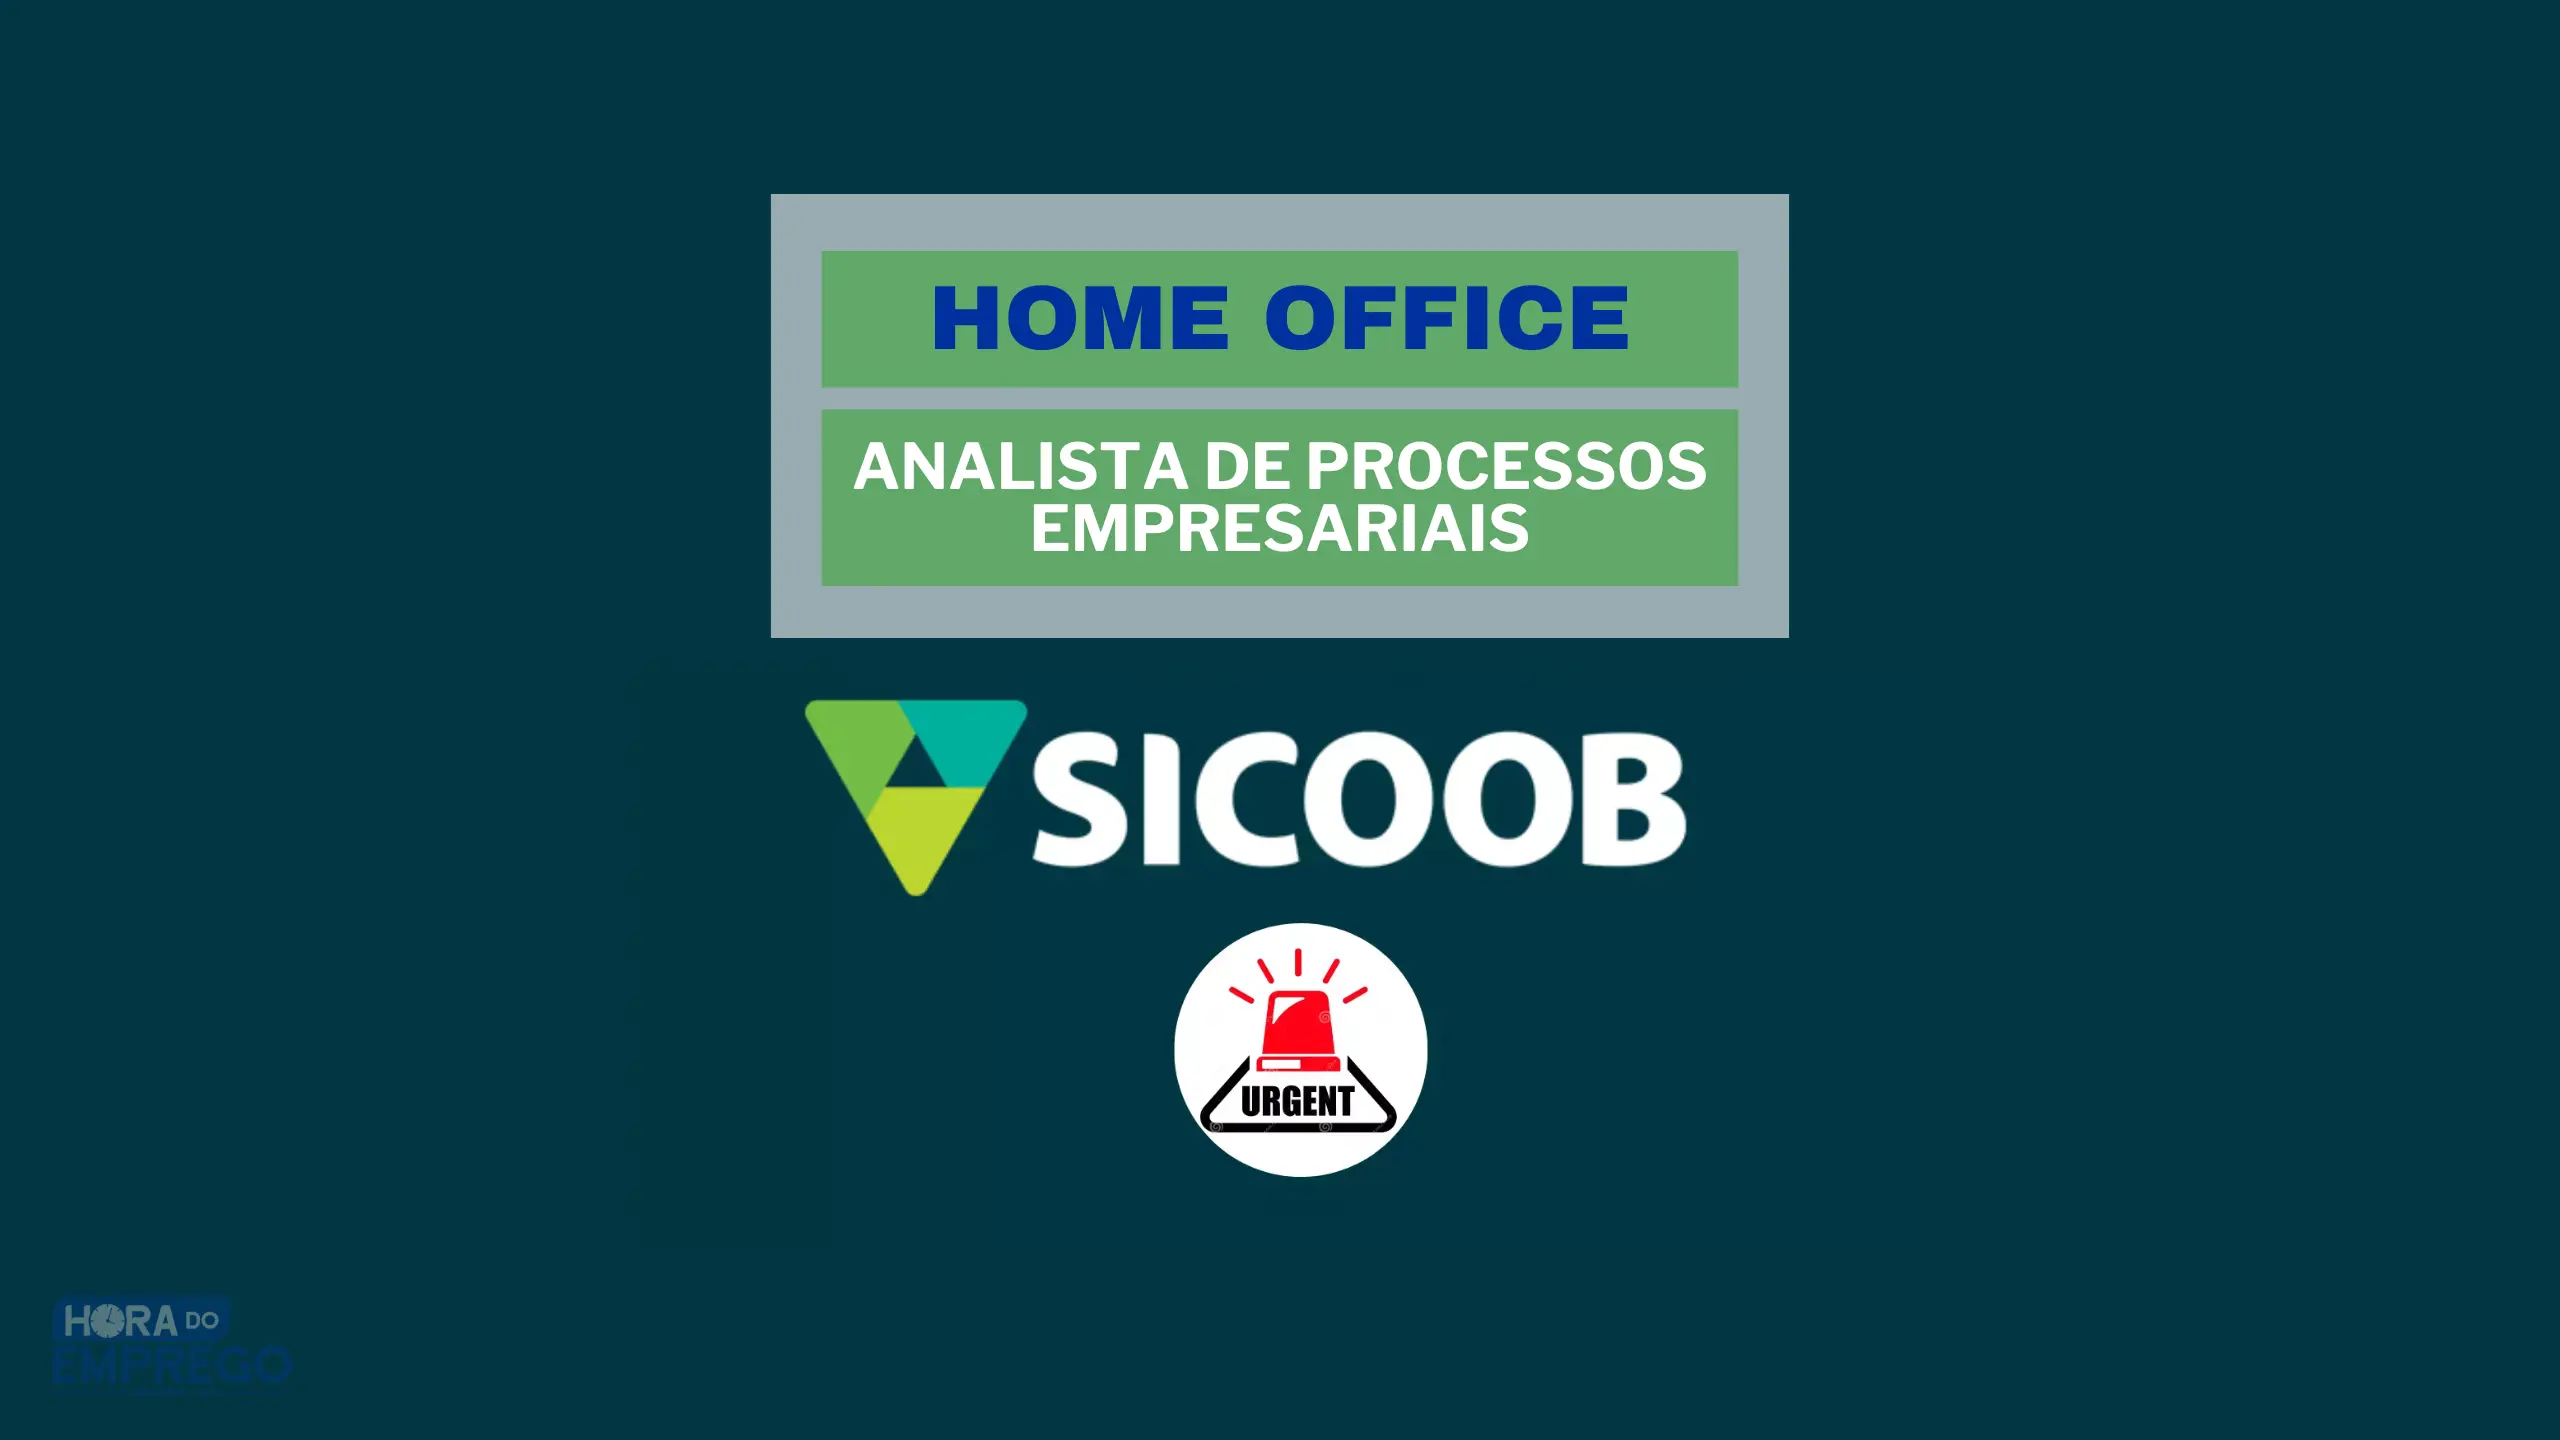 Banco Sicoob abriu vaga HOME OFFICE para TRABALHAR DE CASA no cargo de Analista de Processos Empresariais